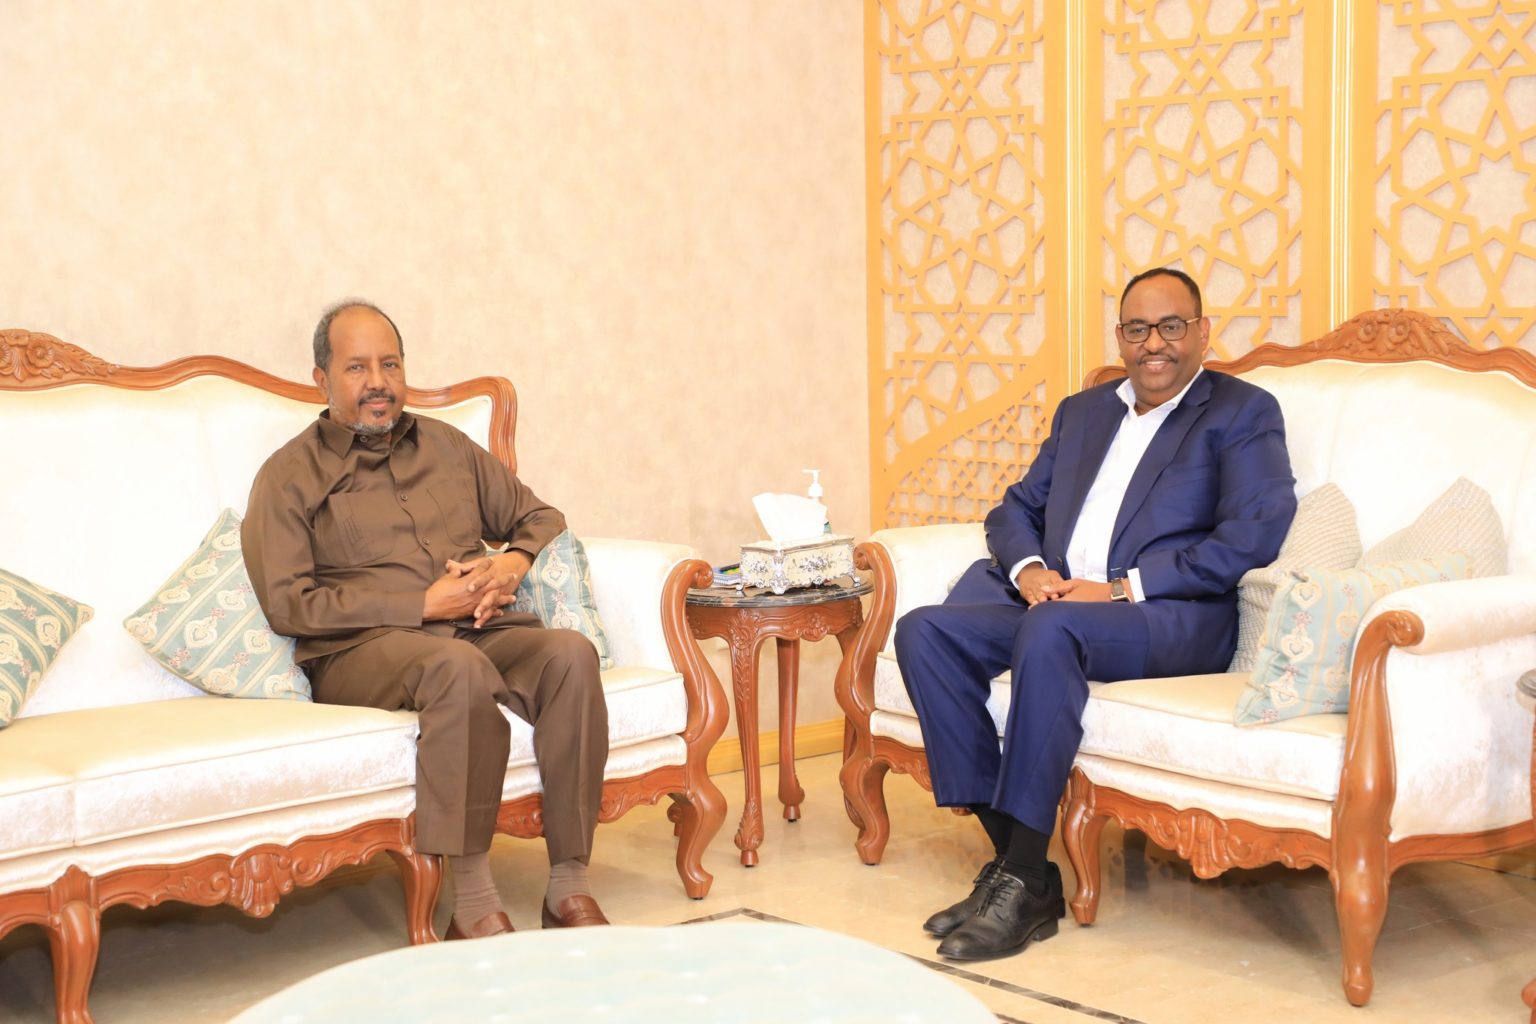 , الرئيس الصومالي يعود إلى مقديشو بعد زيارته إلى بونتلاند ولا نتائج للقاءاته بقيادة الولاية